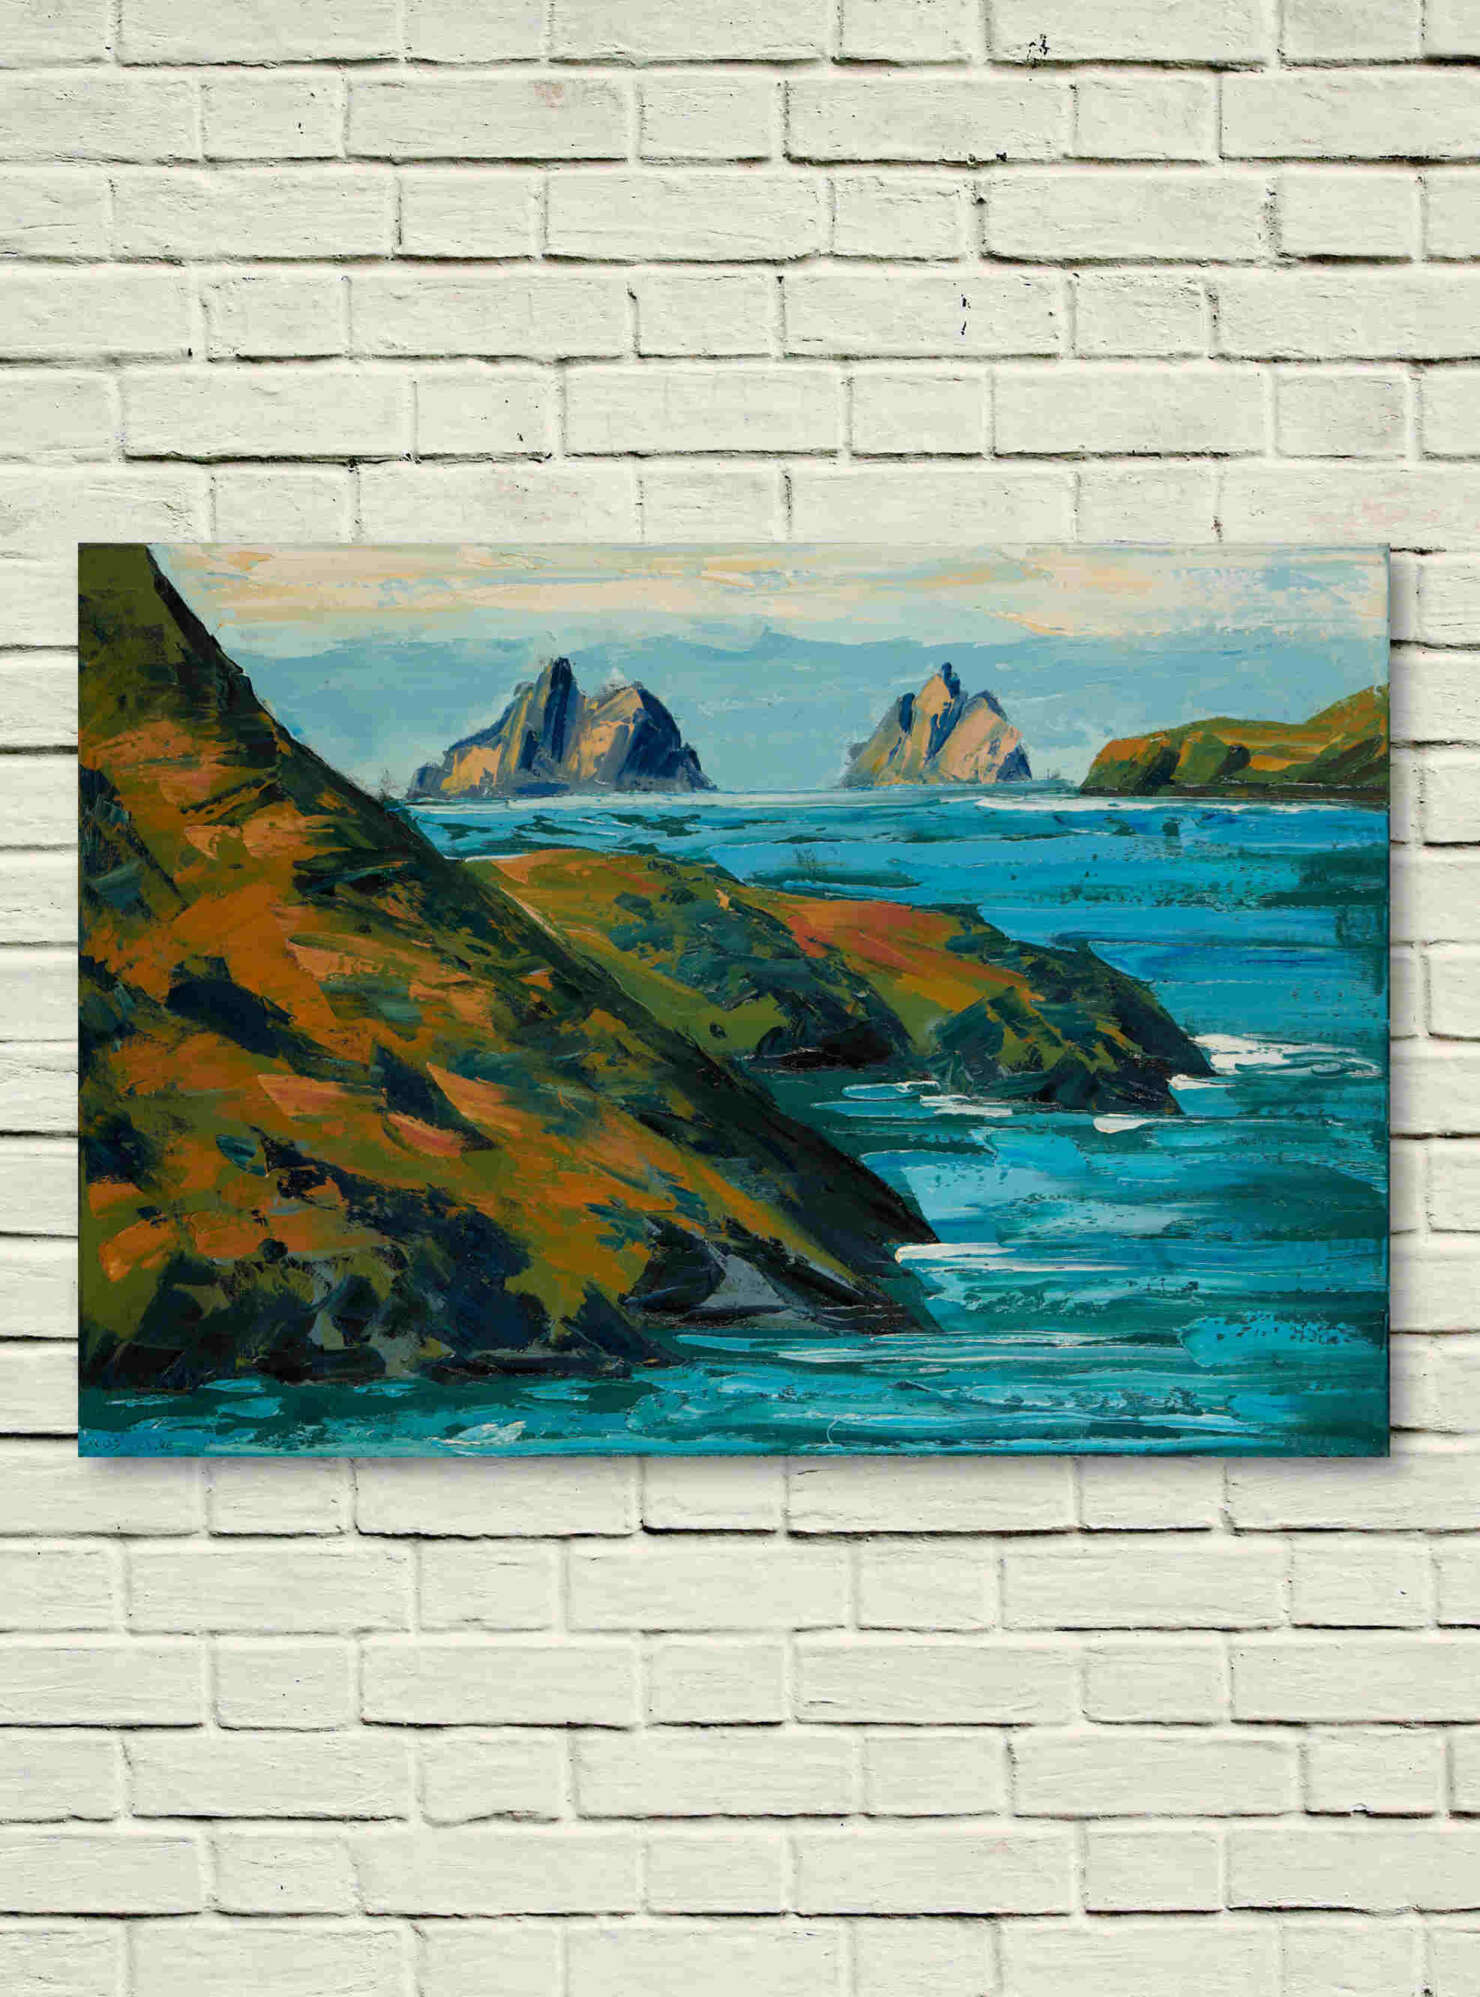 artist rod coyne's landscape "Skellig Horizon" is shown here, unframed on a white wall.